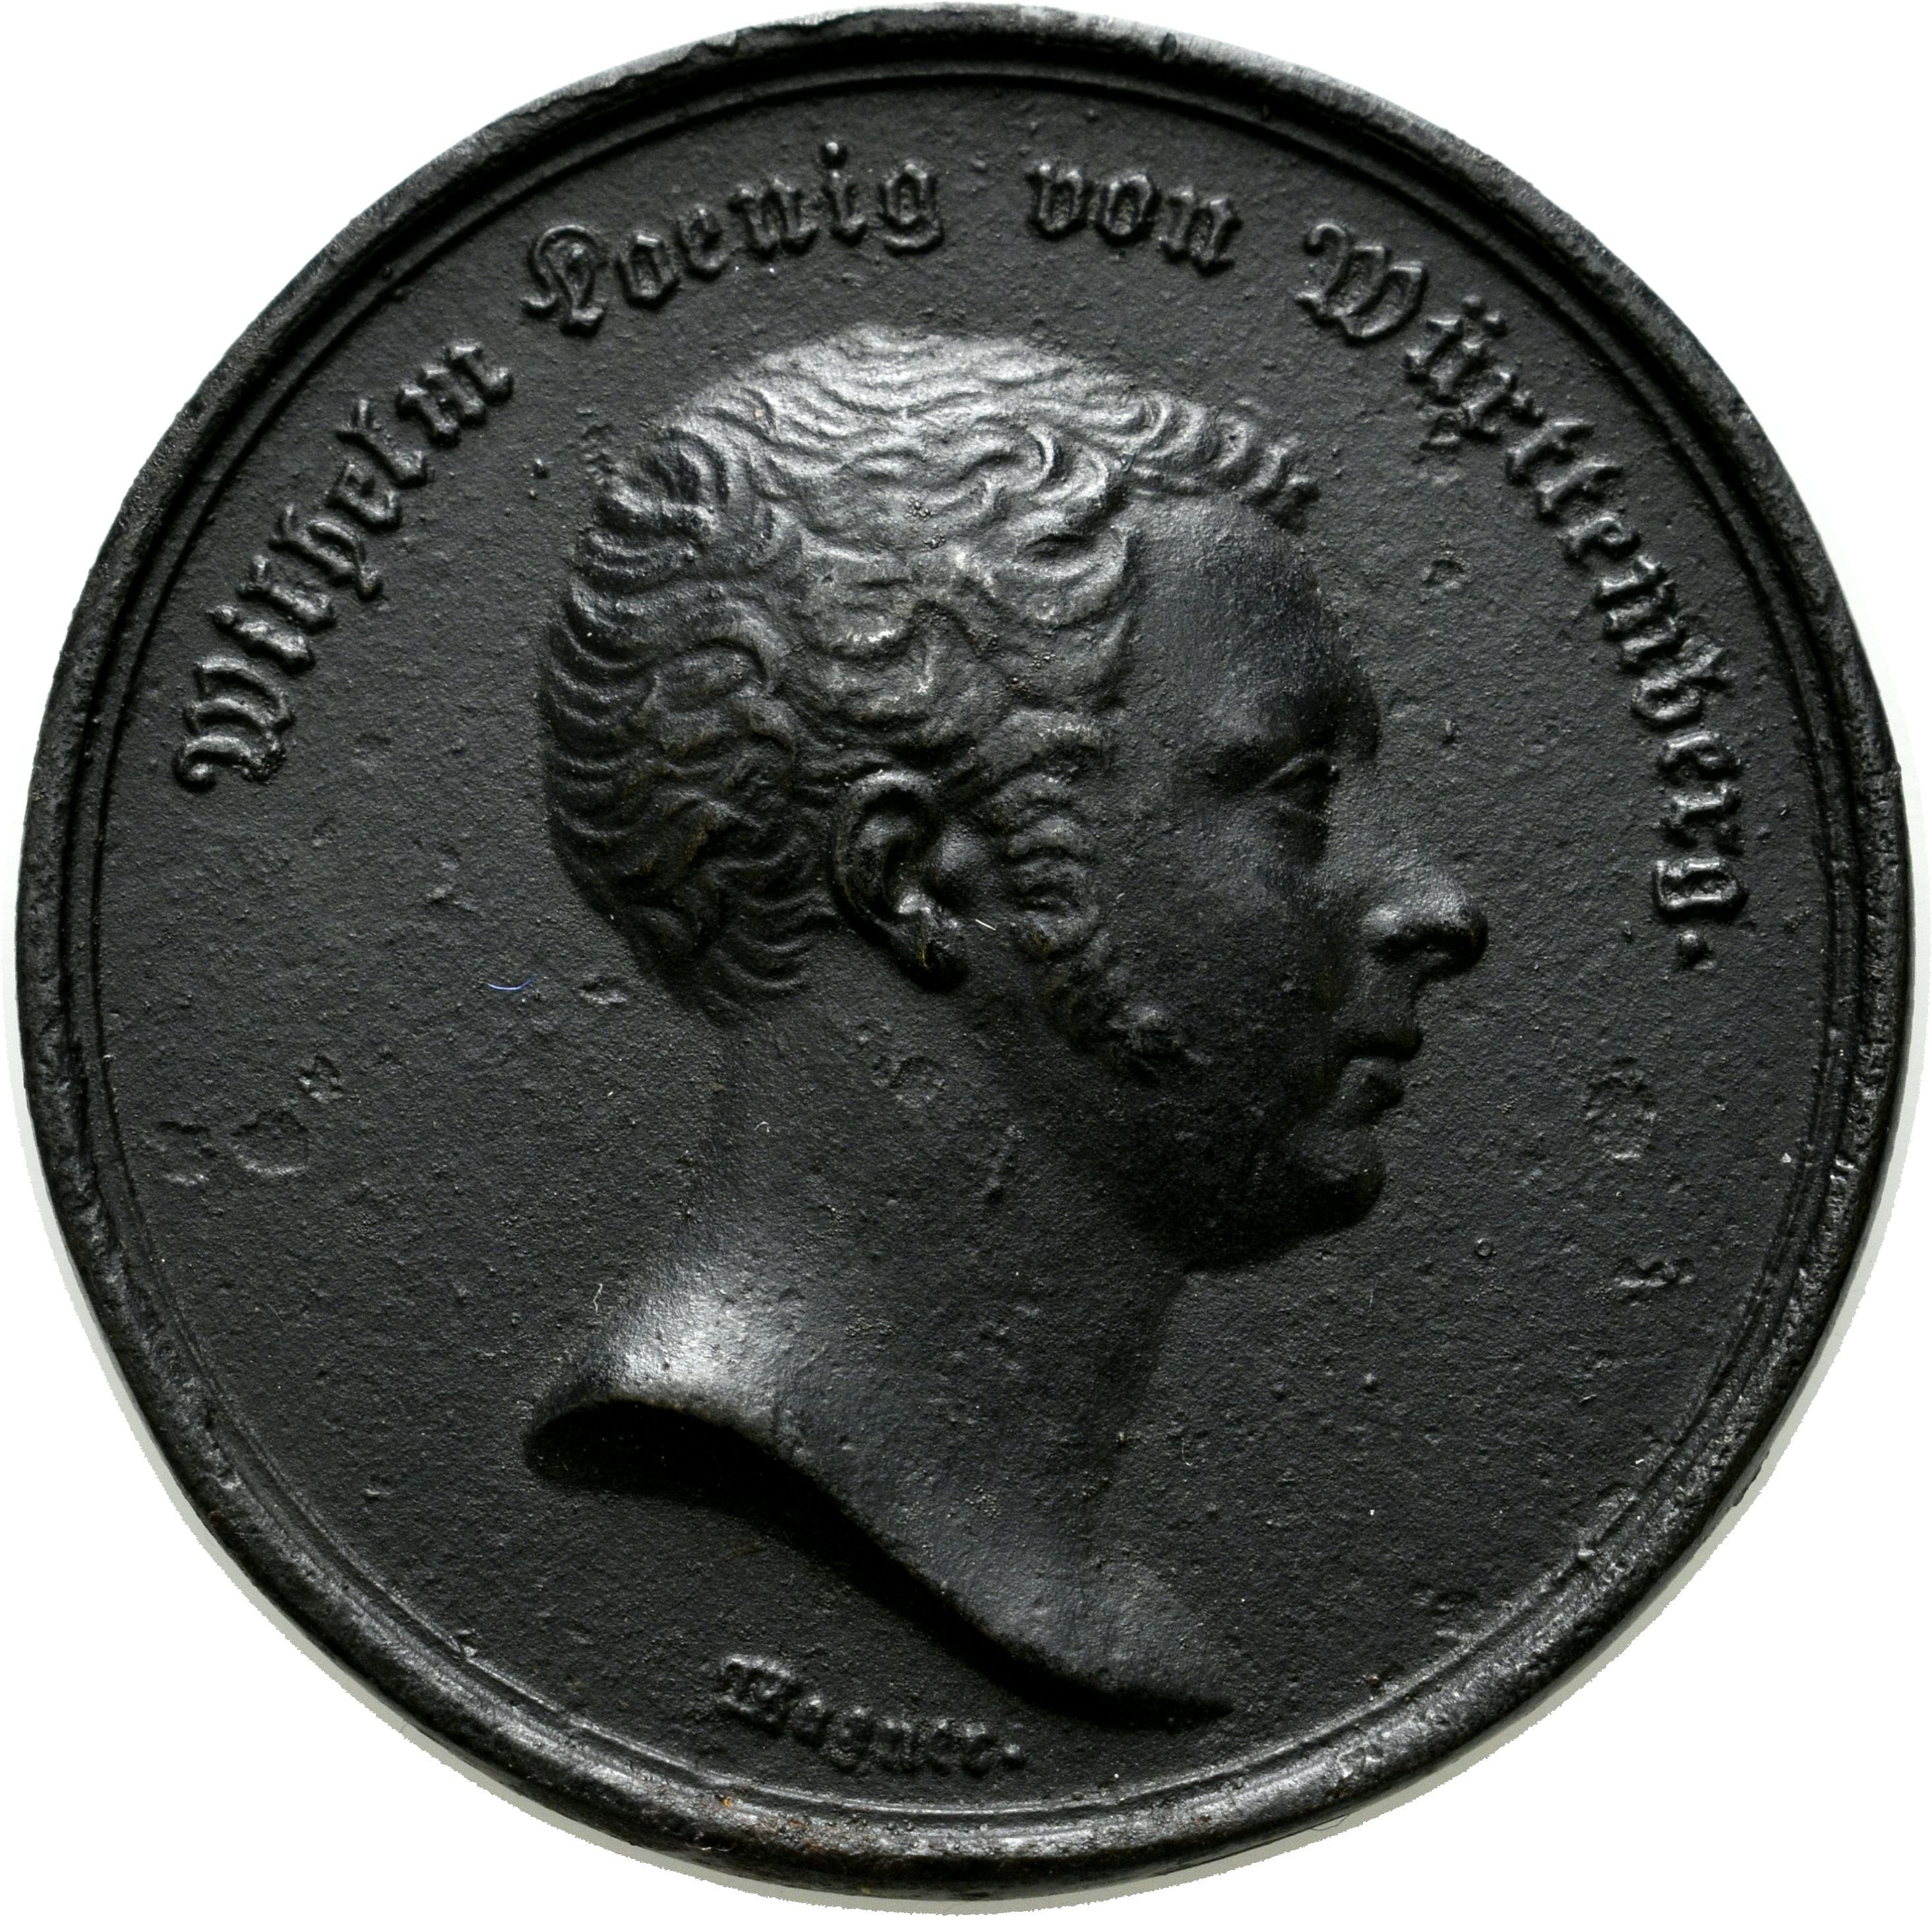 Eisenguss-Medaille auf den württembergischen Verfassungsvertrag von 1819 (Sparkassenverband Baden-Württemberg CC BY-NC-SA)